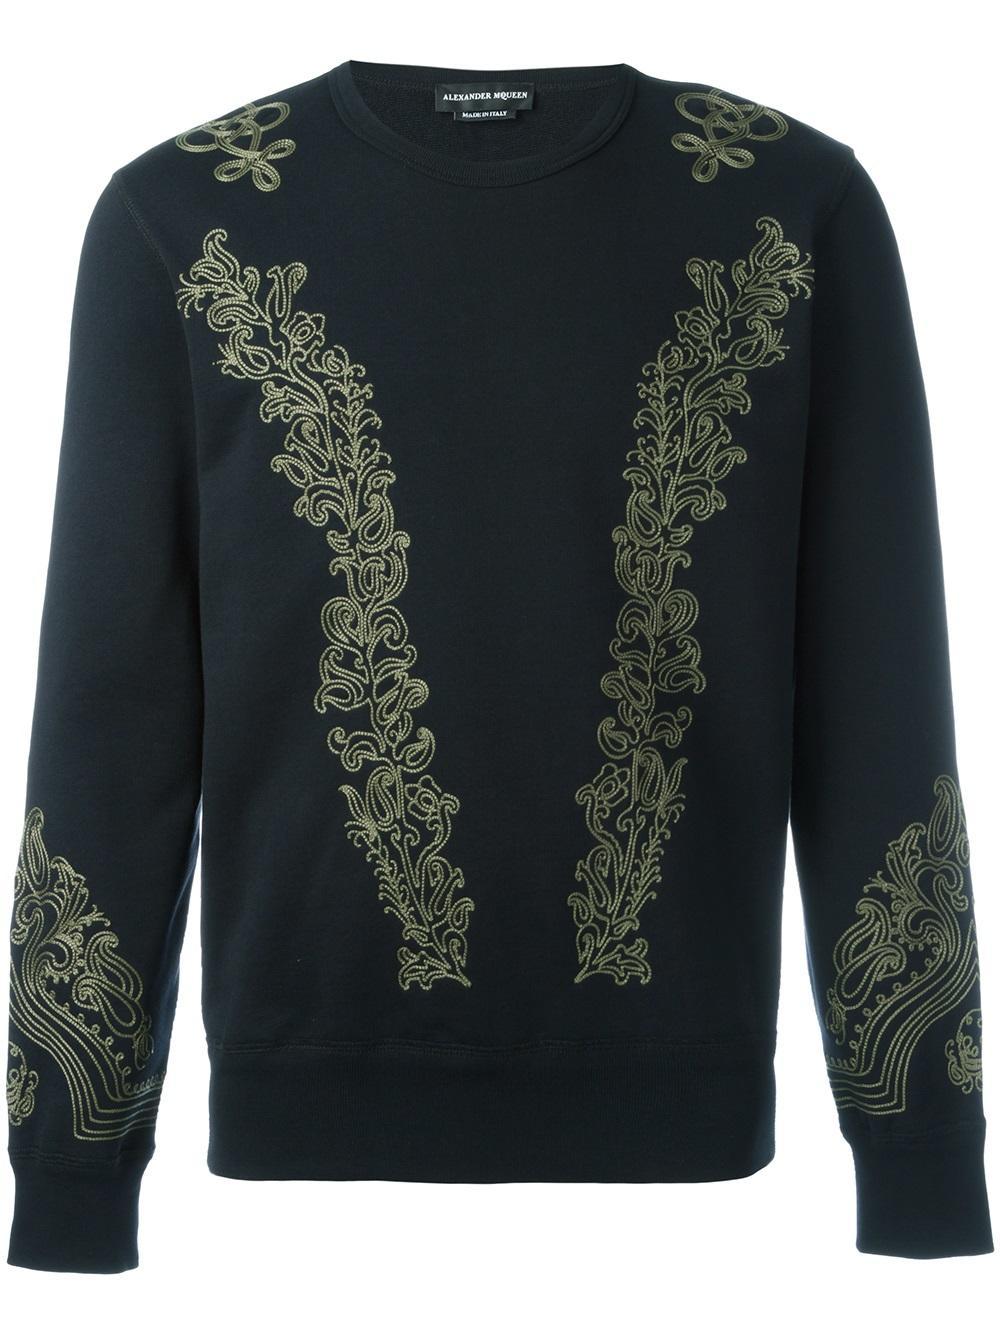 Lyst - Alexander Mcqueen Embroidered Cotton-jersey Sweatshirt in Black ...